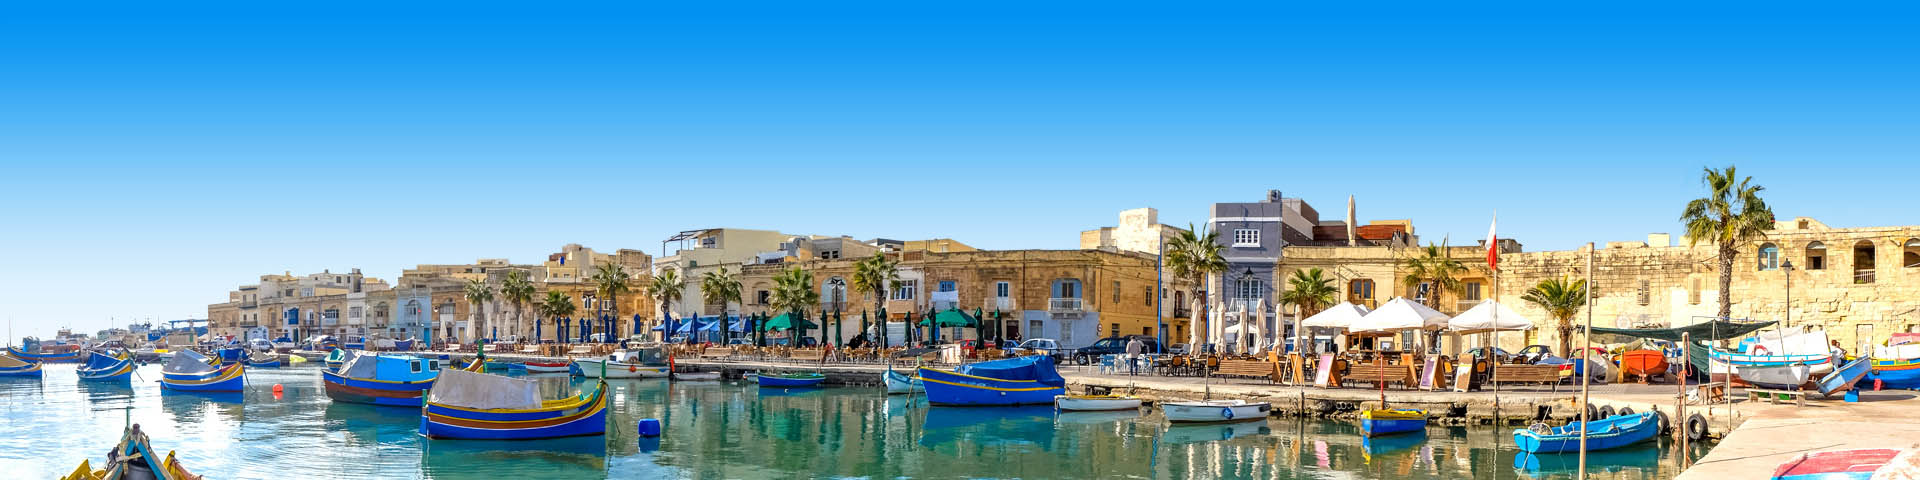 Haven in Malta met traditionele vissersboten